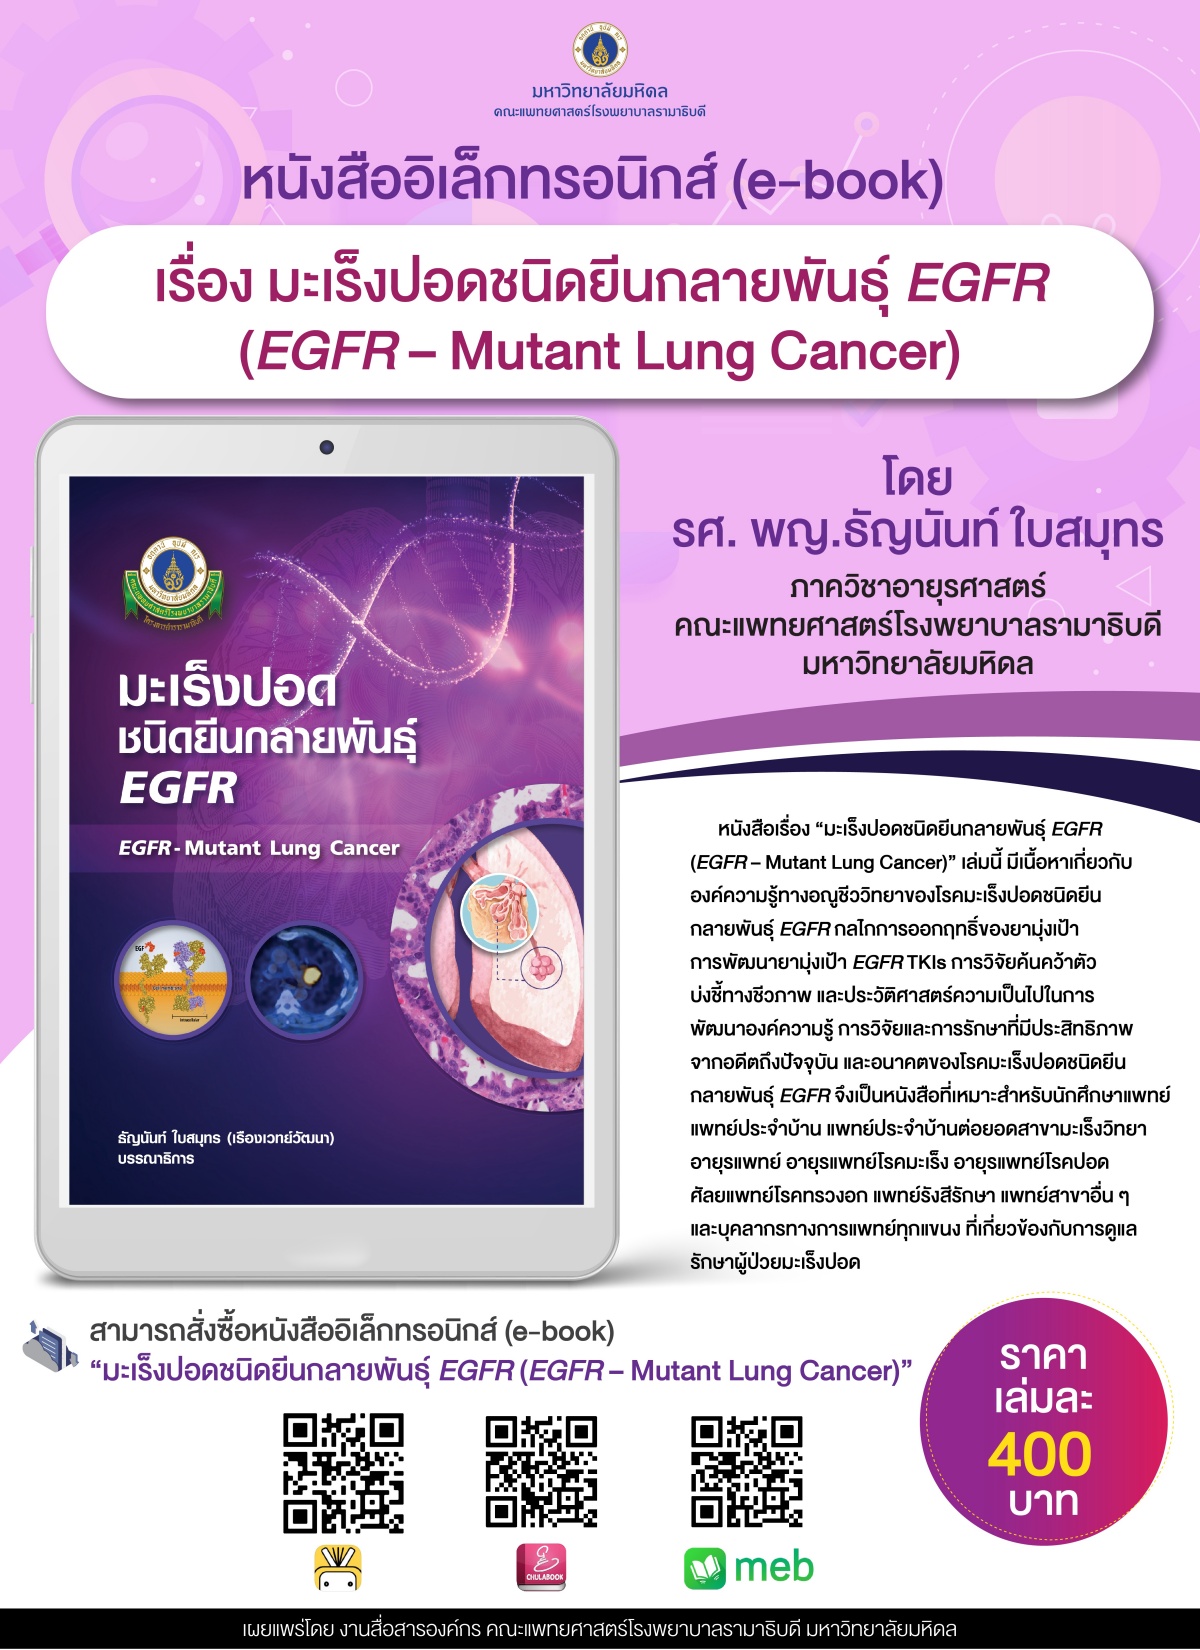 หนังสืออิเล็กทรอนิกส์ (e-book) เรื่อง มะเร็งปอดชนิดยีนกลายพันธุ์ EGFR (EGFR-Mutant Lung Cancer)